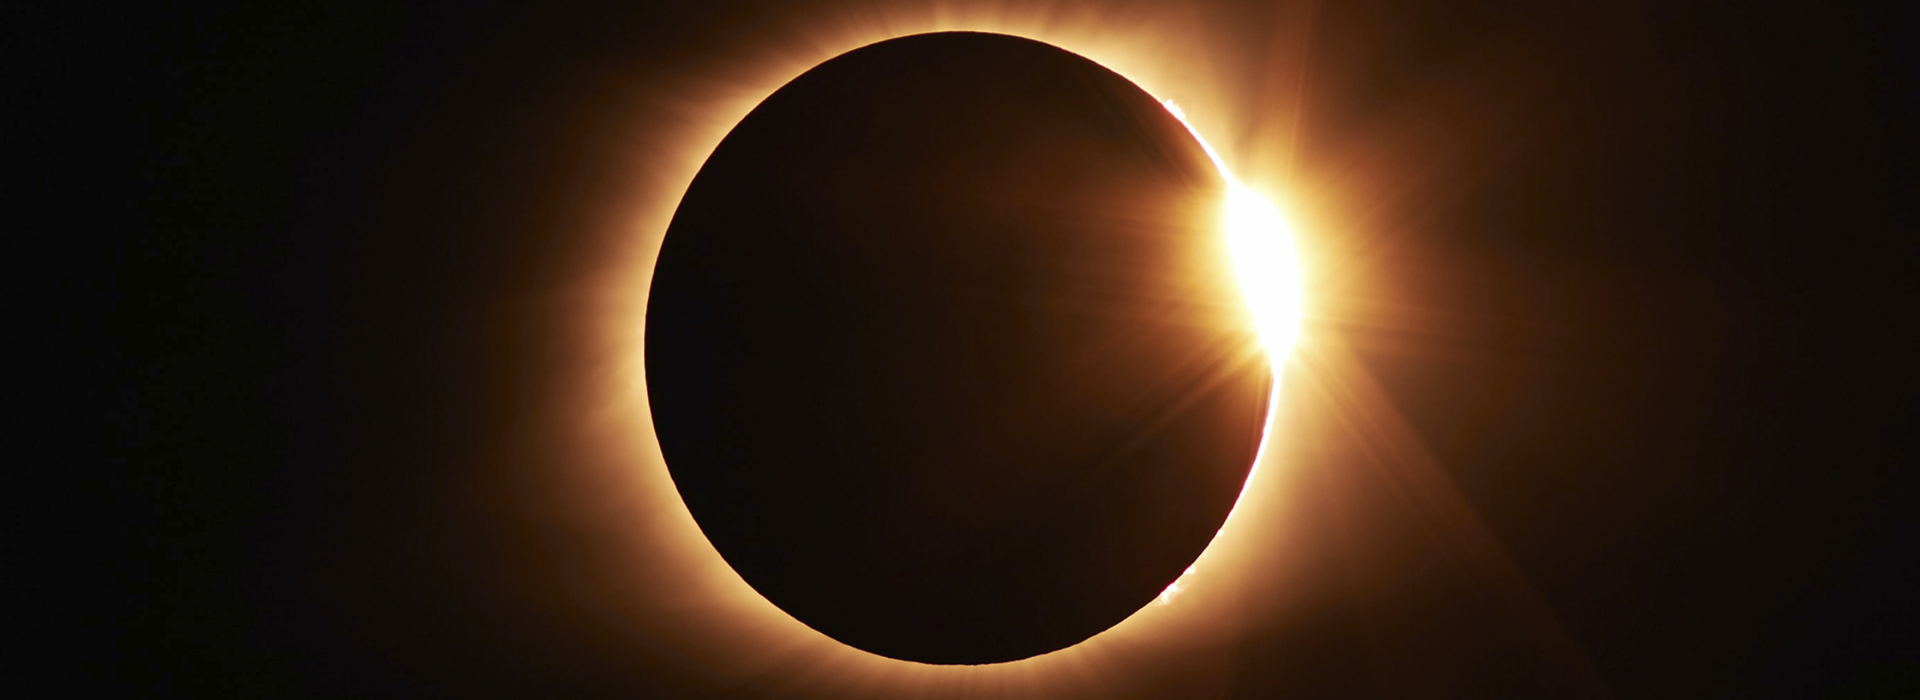 Jak przygotować się do obserwacji częściowego zaćmienia Słońca?